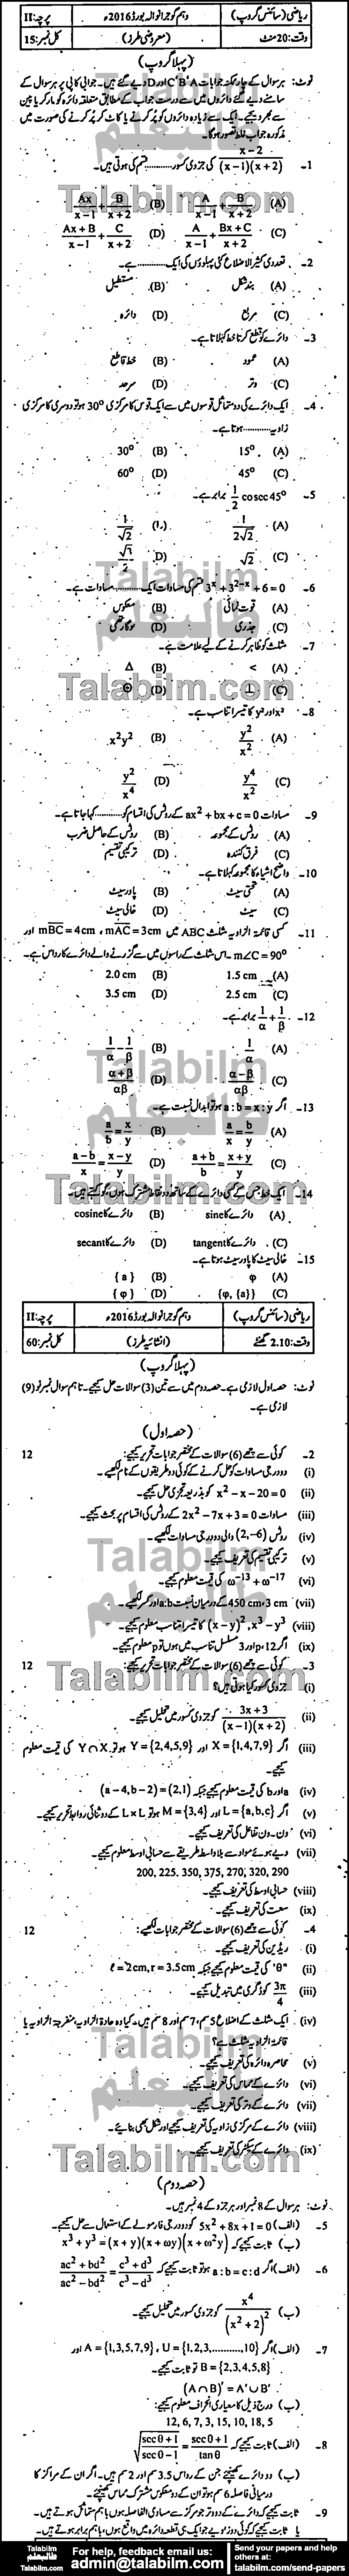 Math 0 past paper for Urdu Medium 2016 Group-I